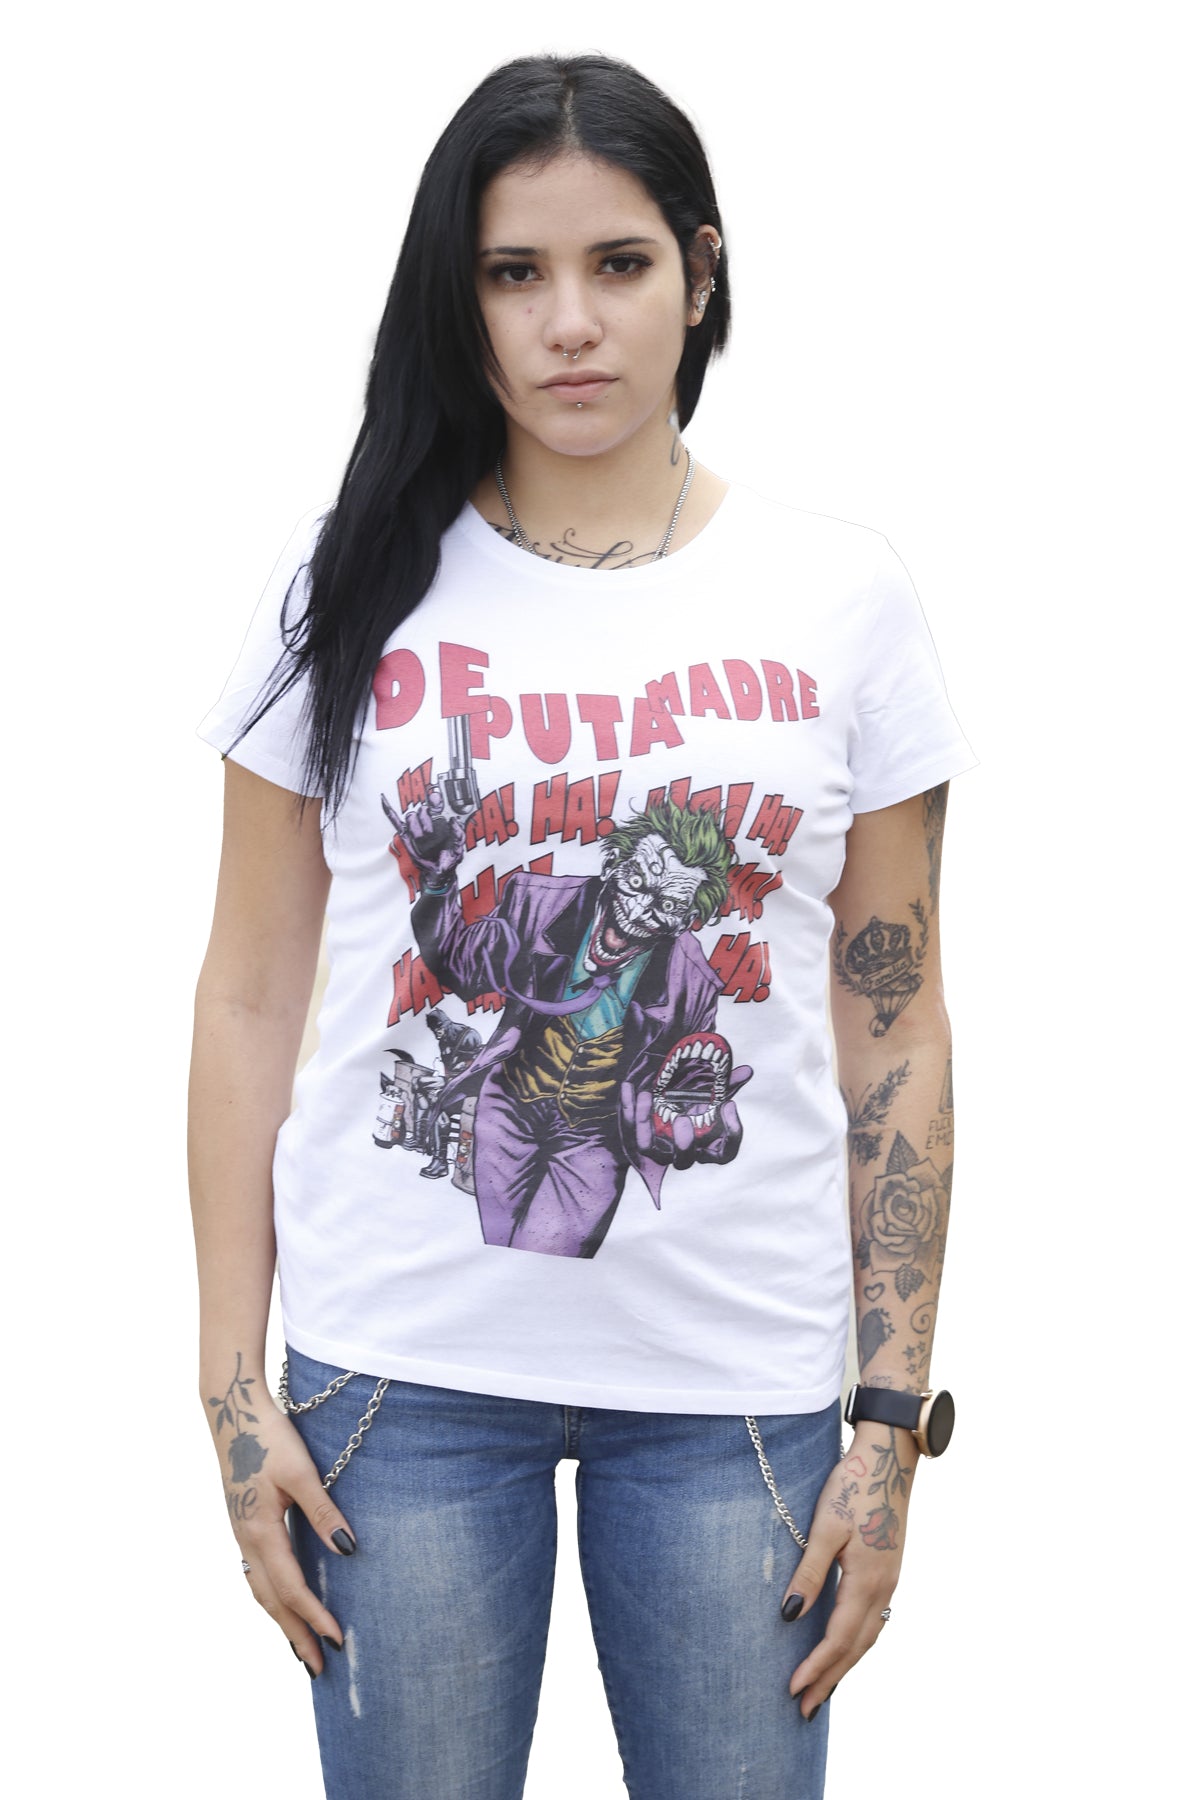 DPM69 T-shirt da donna disegno fatto a mano in italia joker